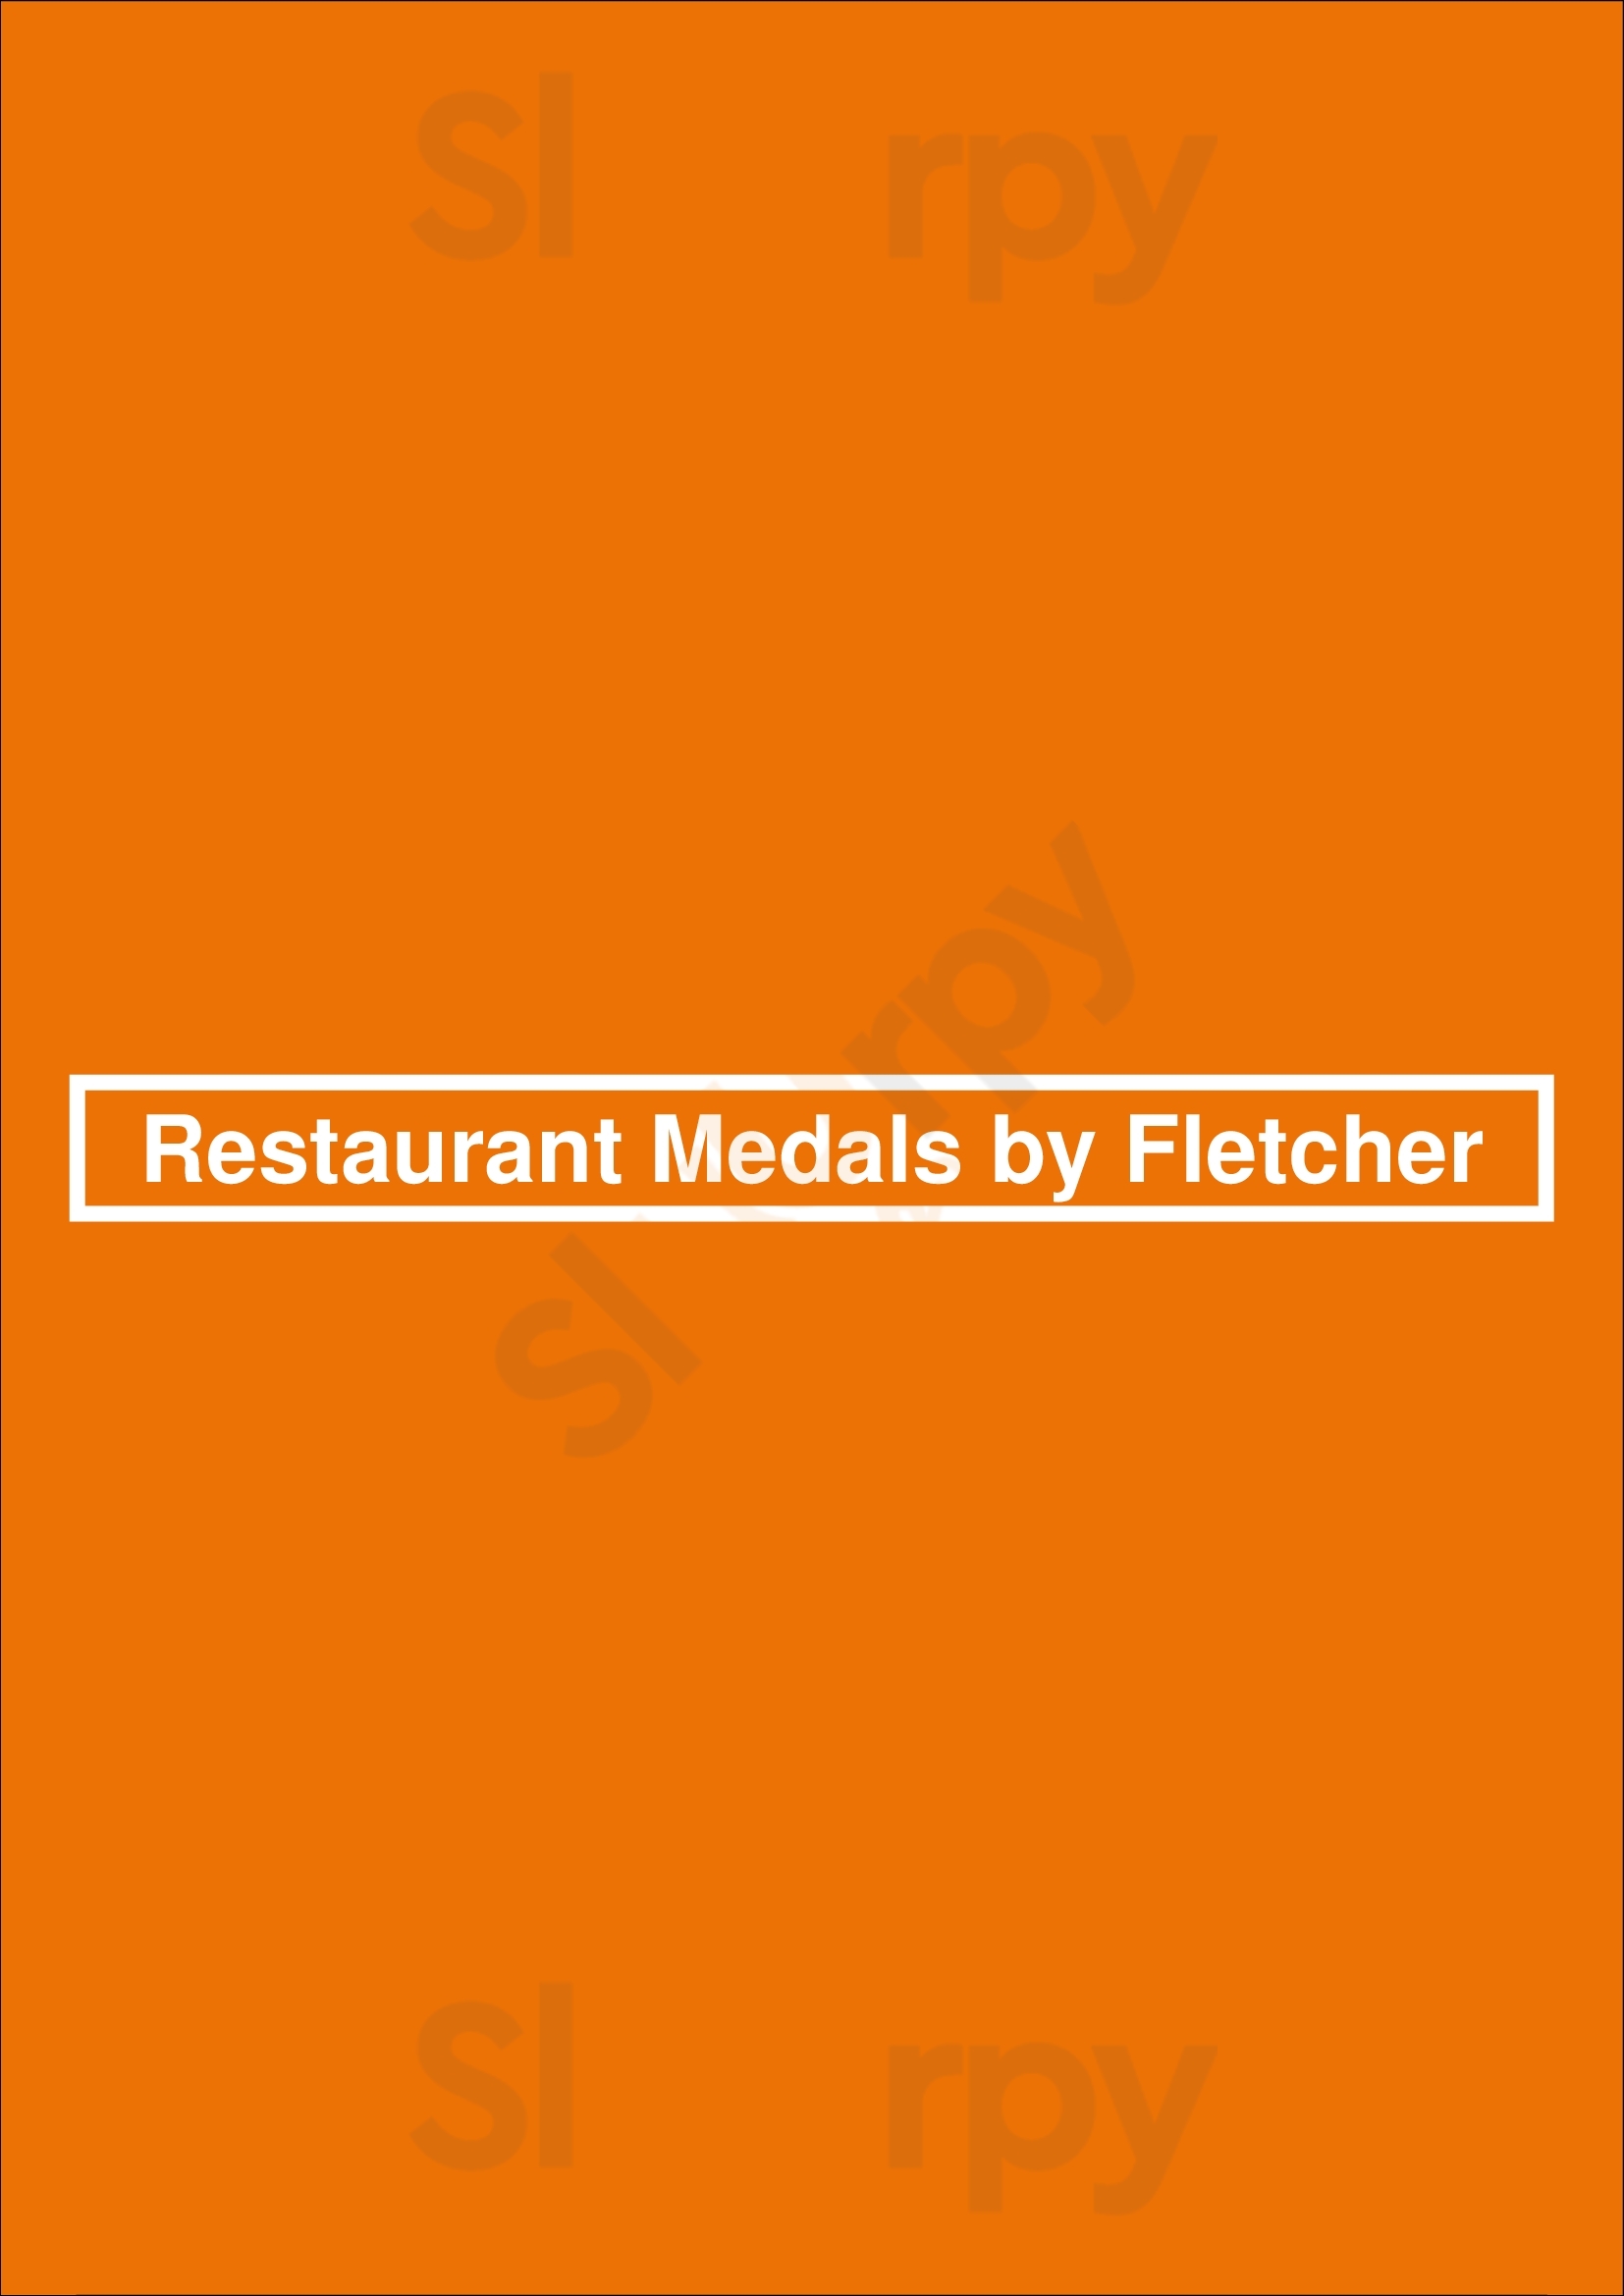 Restaurant Medals By Fletcher Sittard Menu - 1